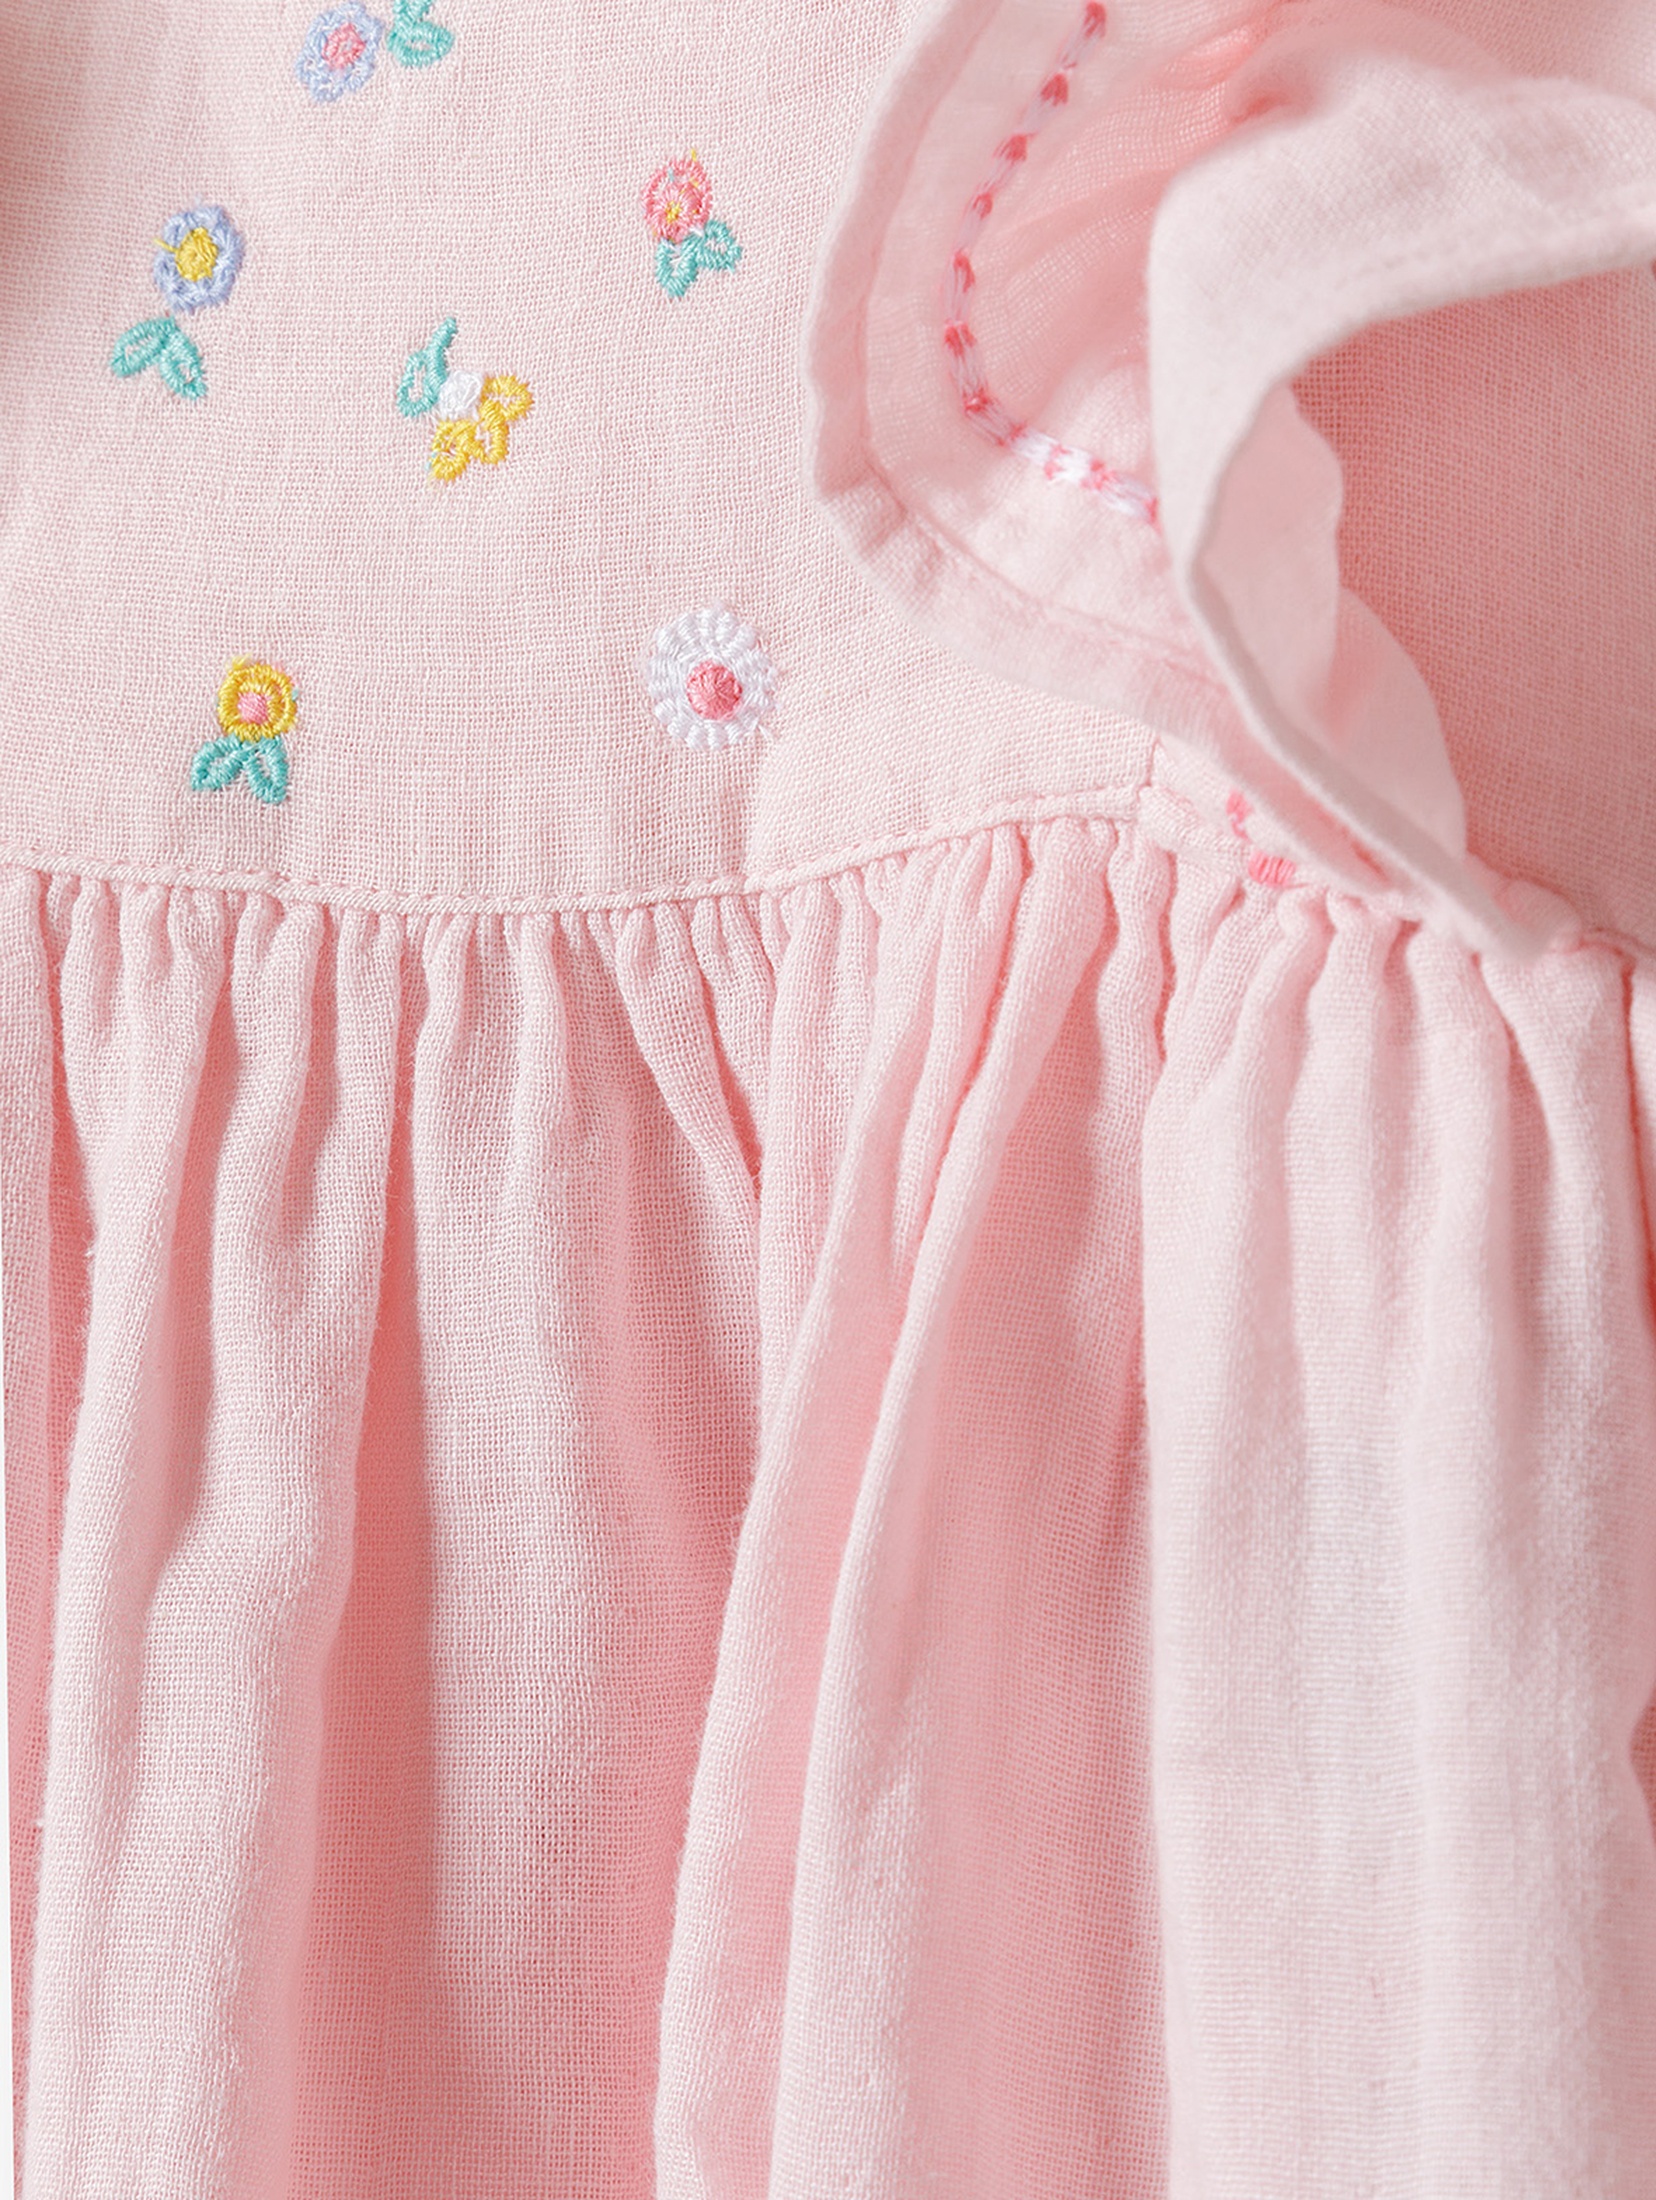 Różowa sukienka niemowlęca bawełniana z krótkim rękawem